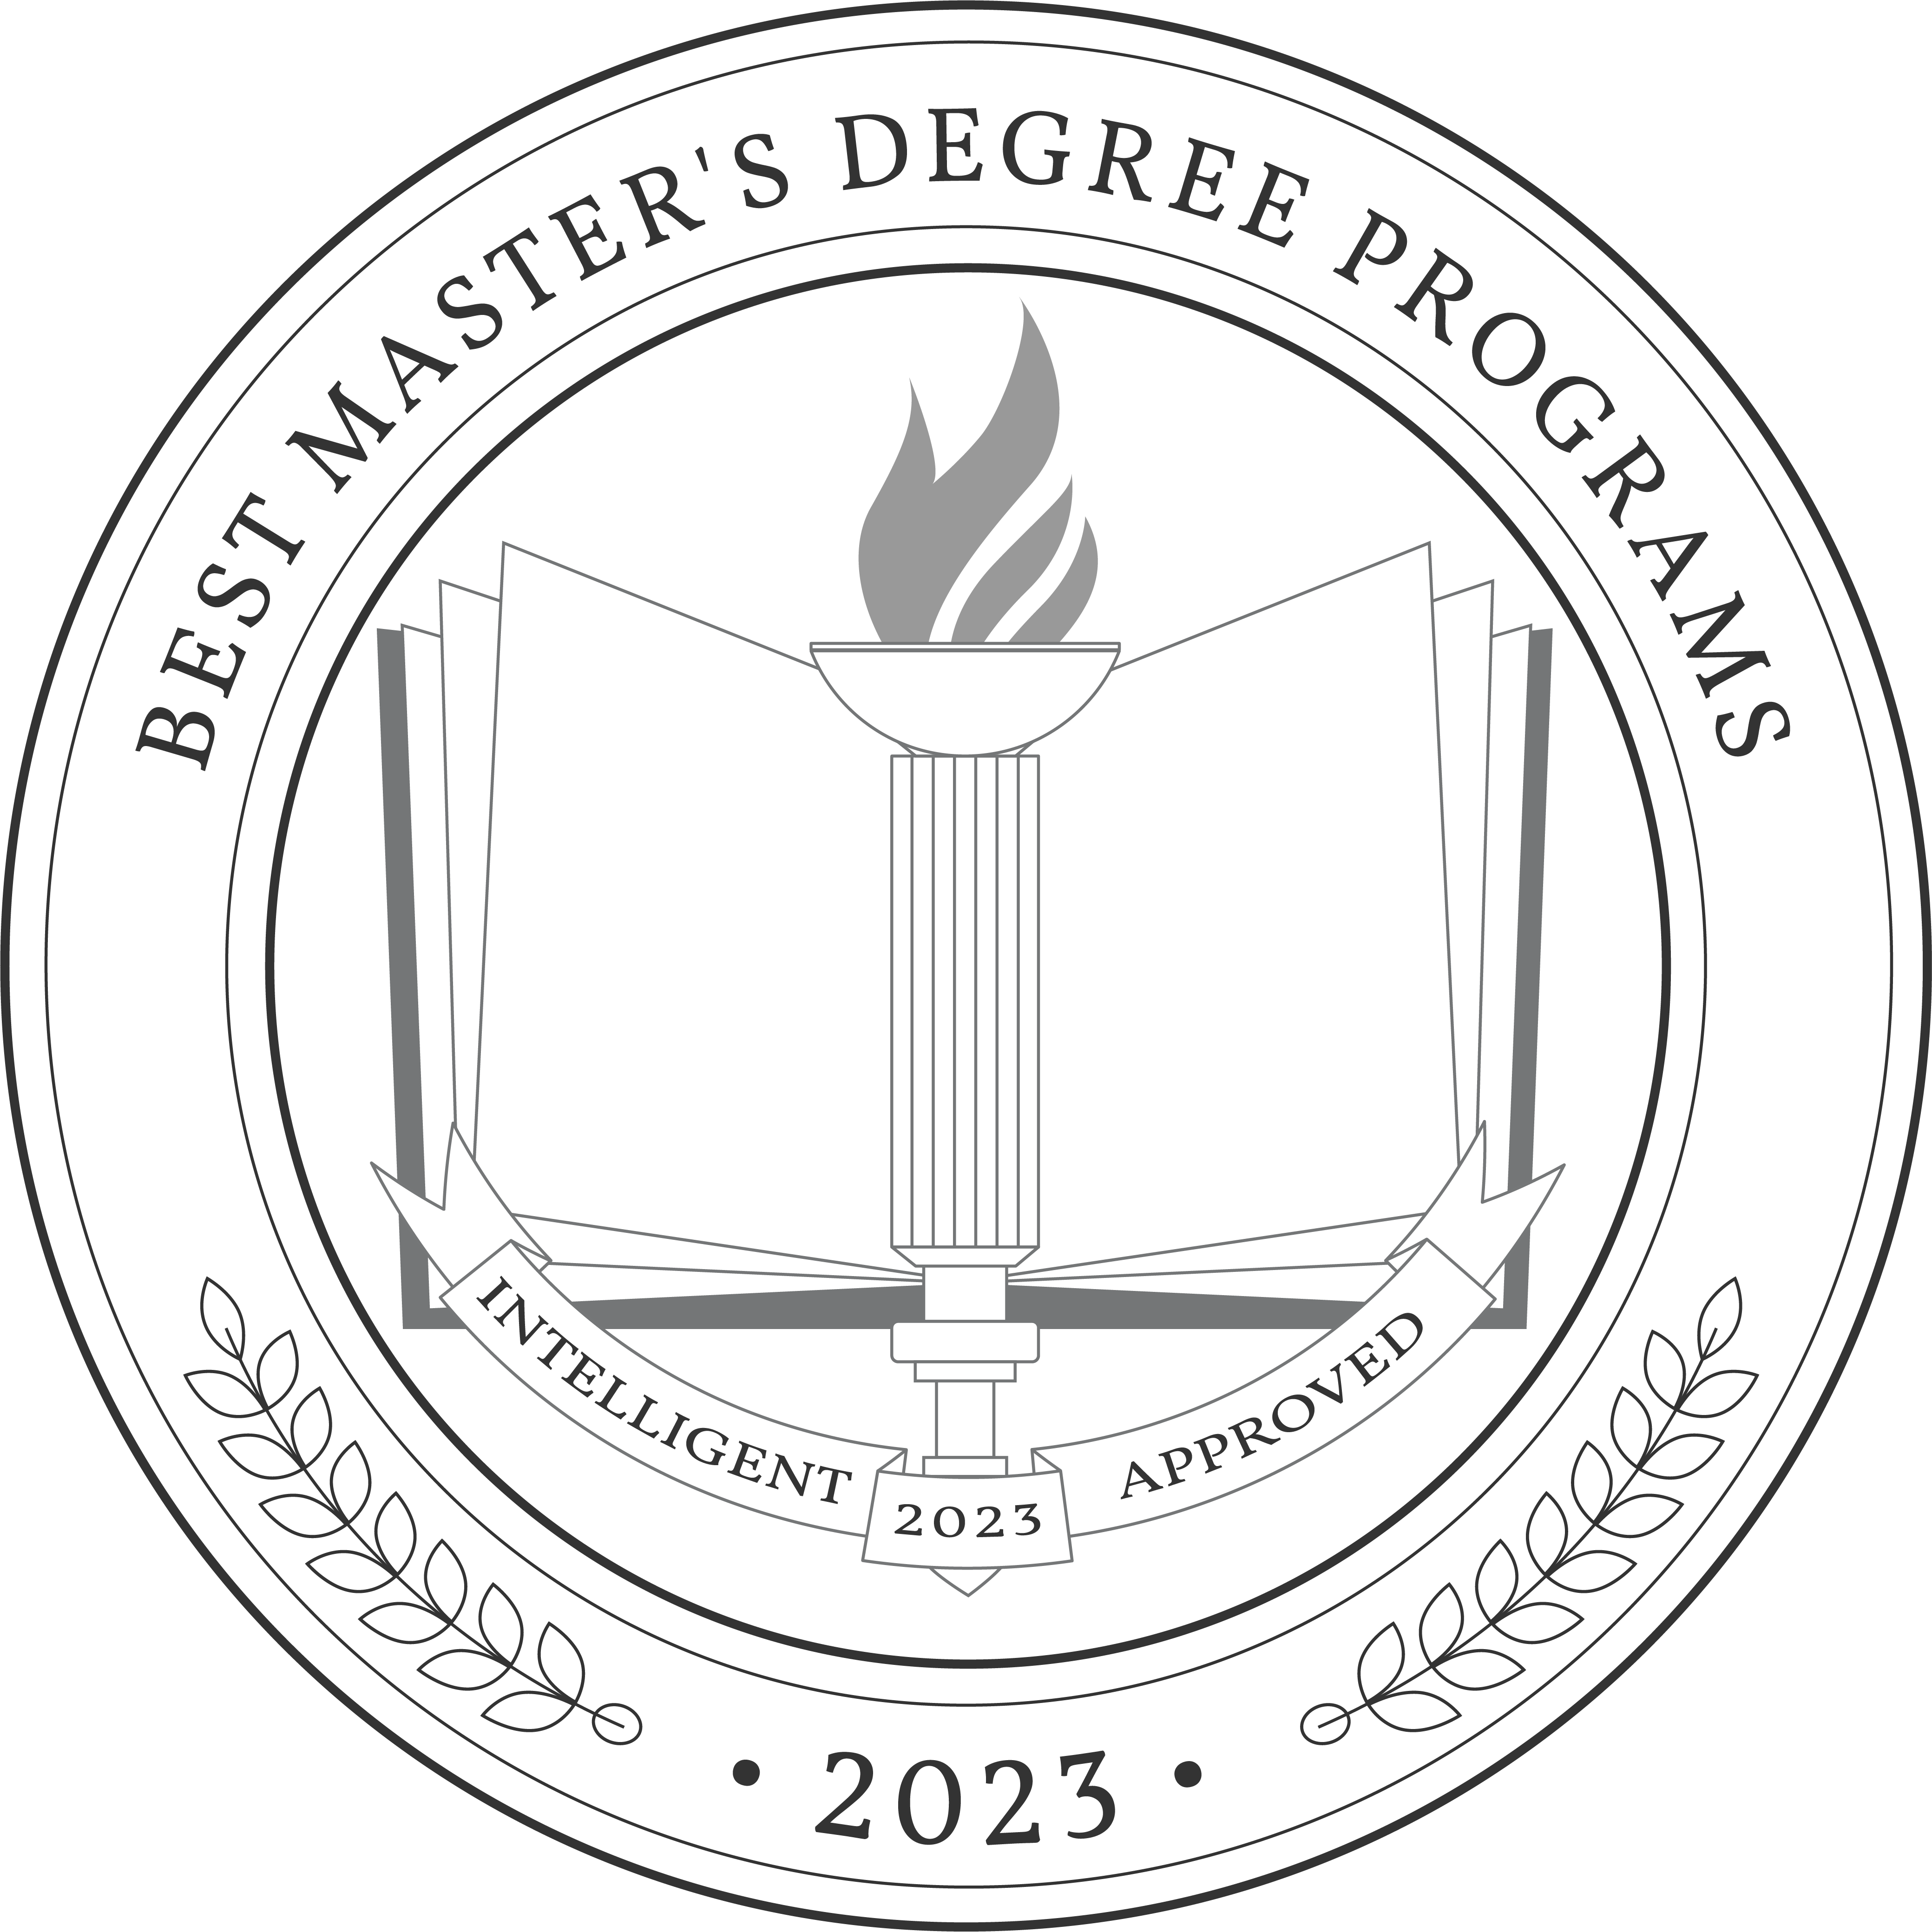 Best Master's Degree Programs 2023 Badge